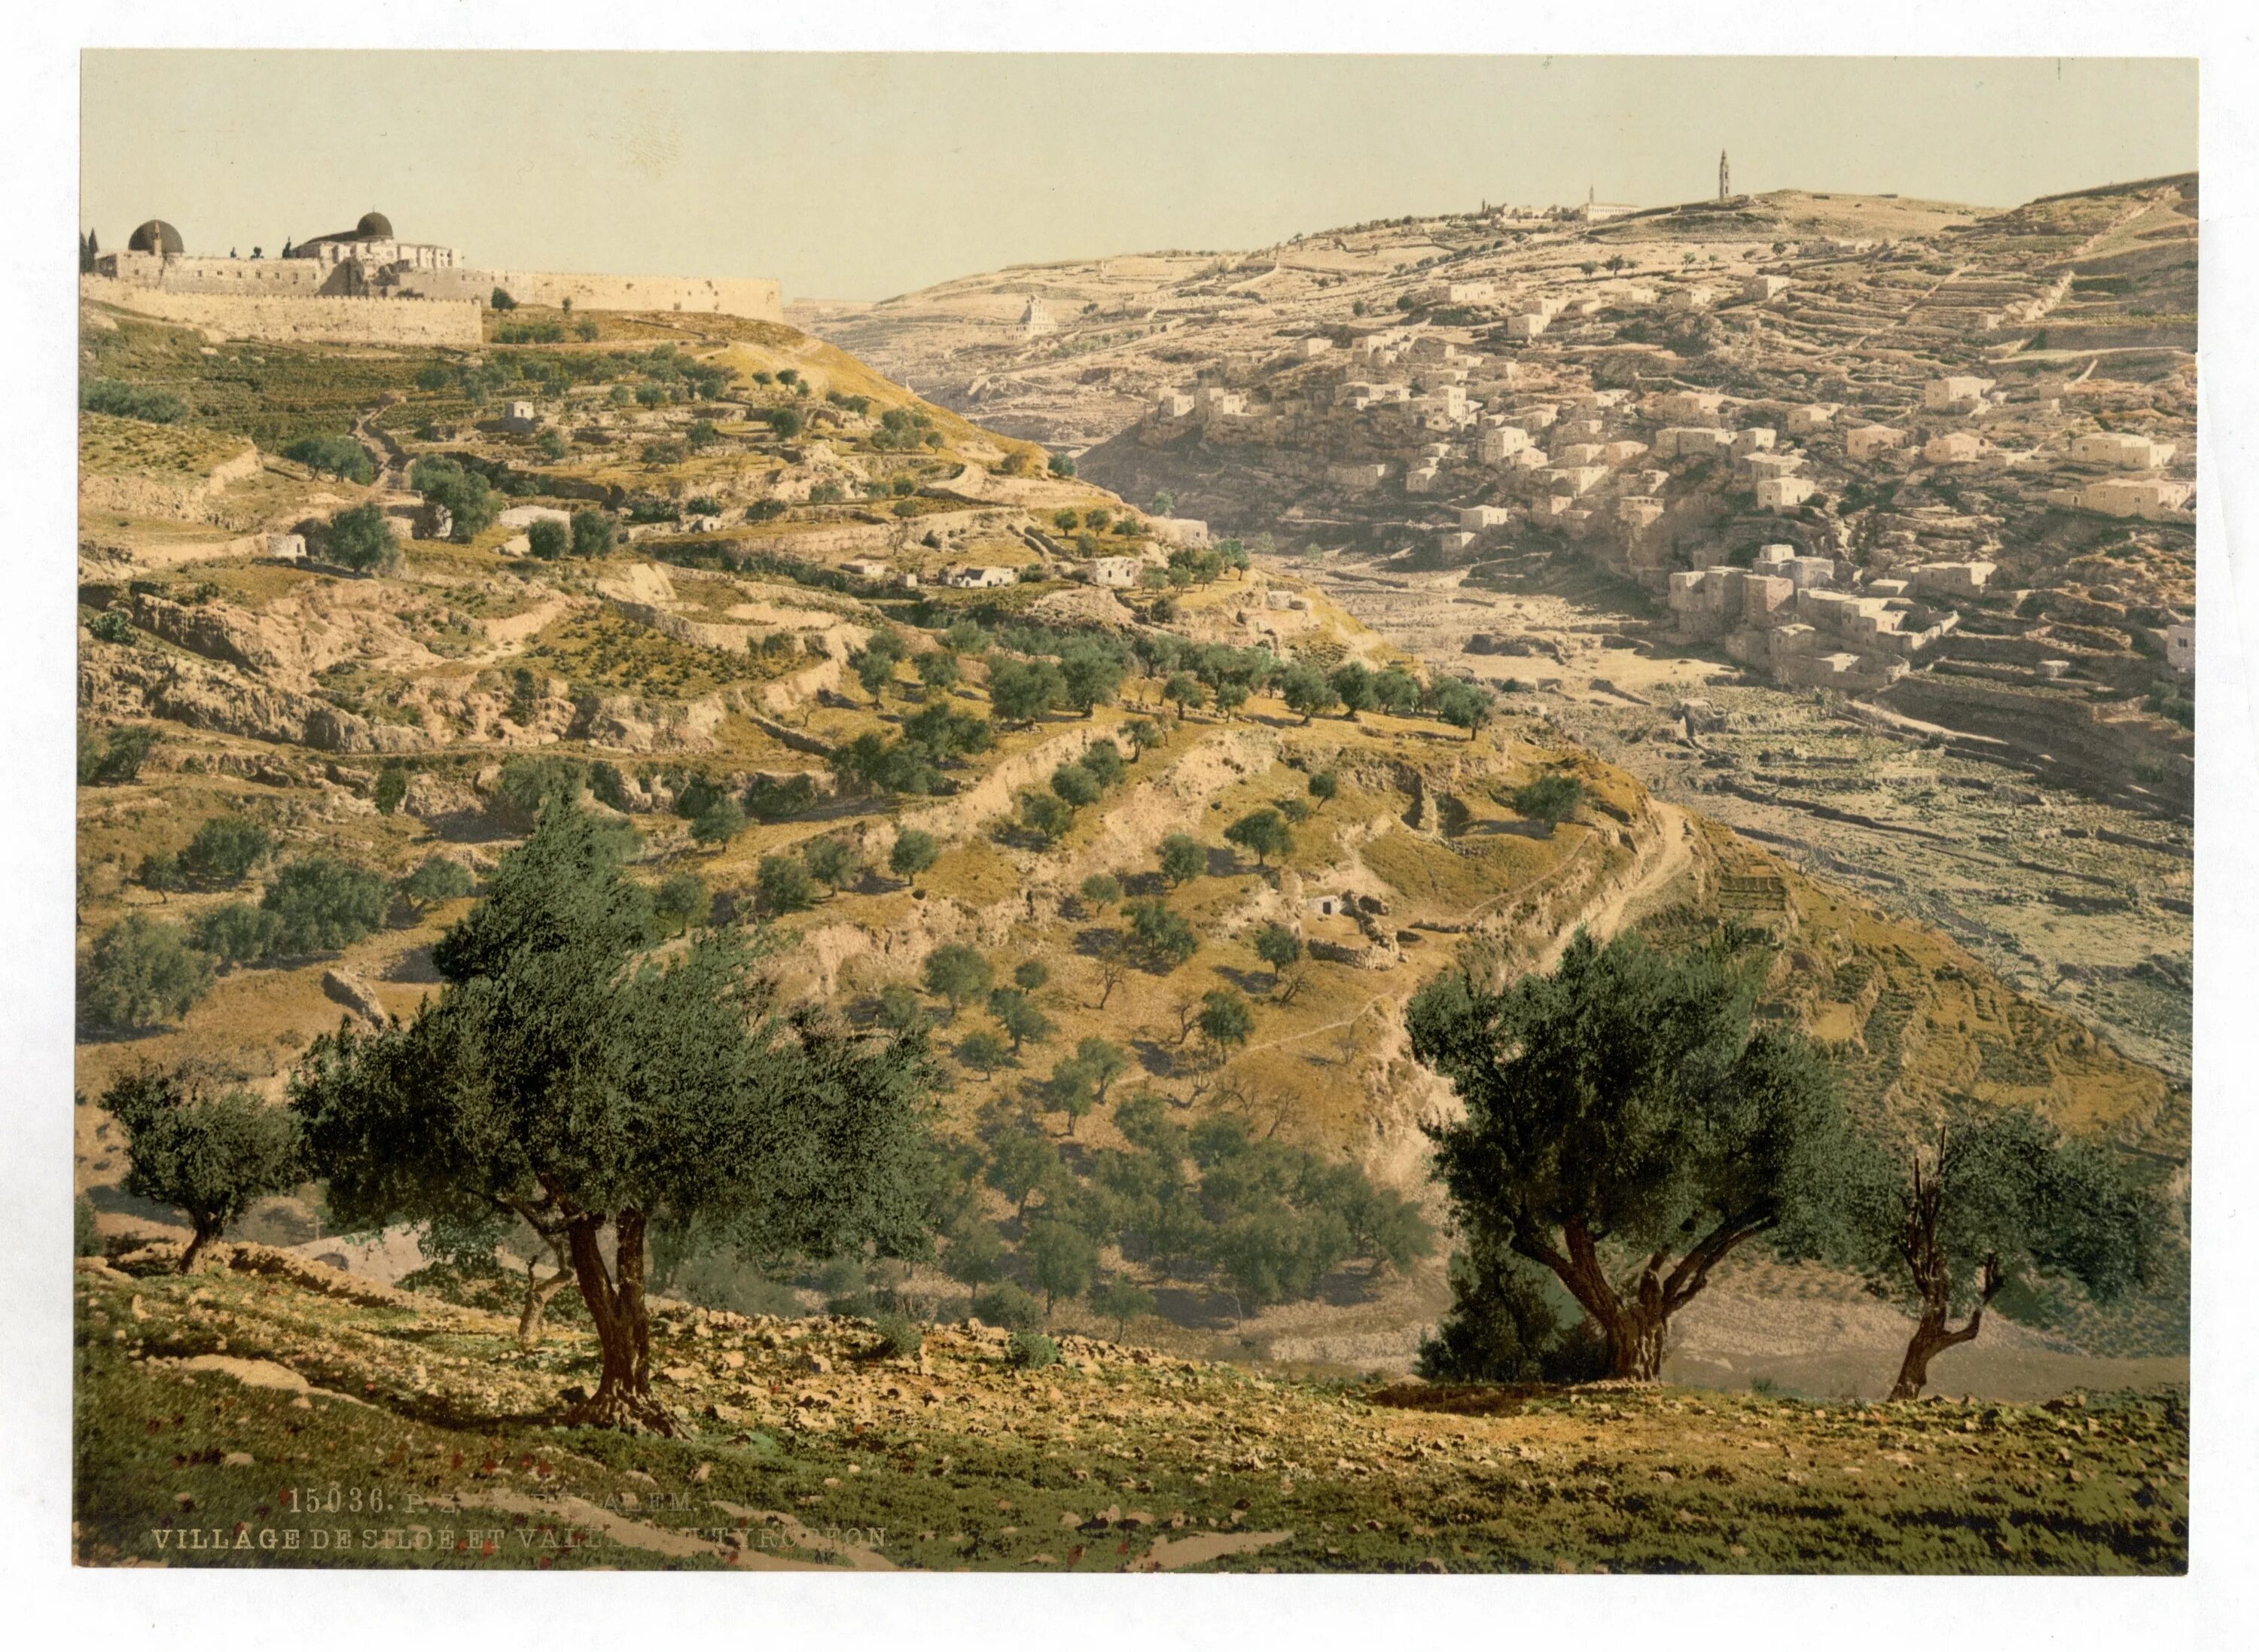 Елеонская гора в Иерусалиме. Кедронская Долина в Иерусалиме. Долина Кедрон Палестина. Древняя Палестина Иерусалим.